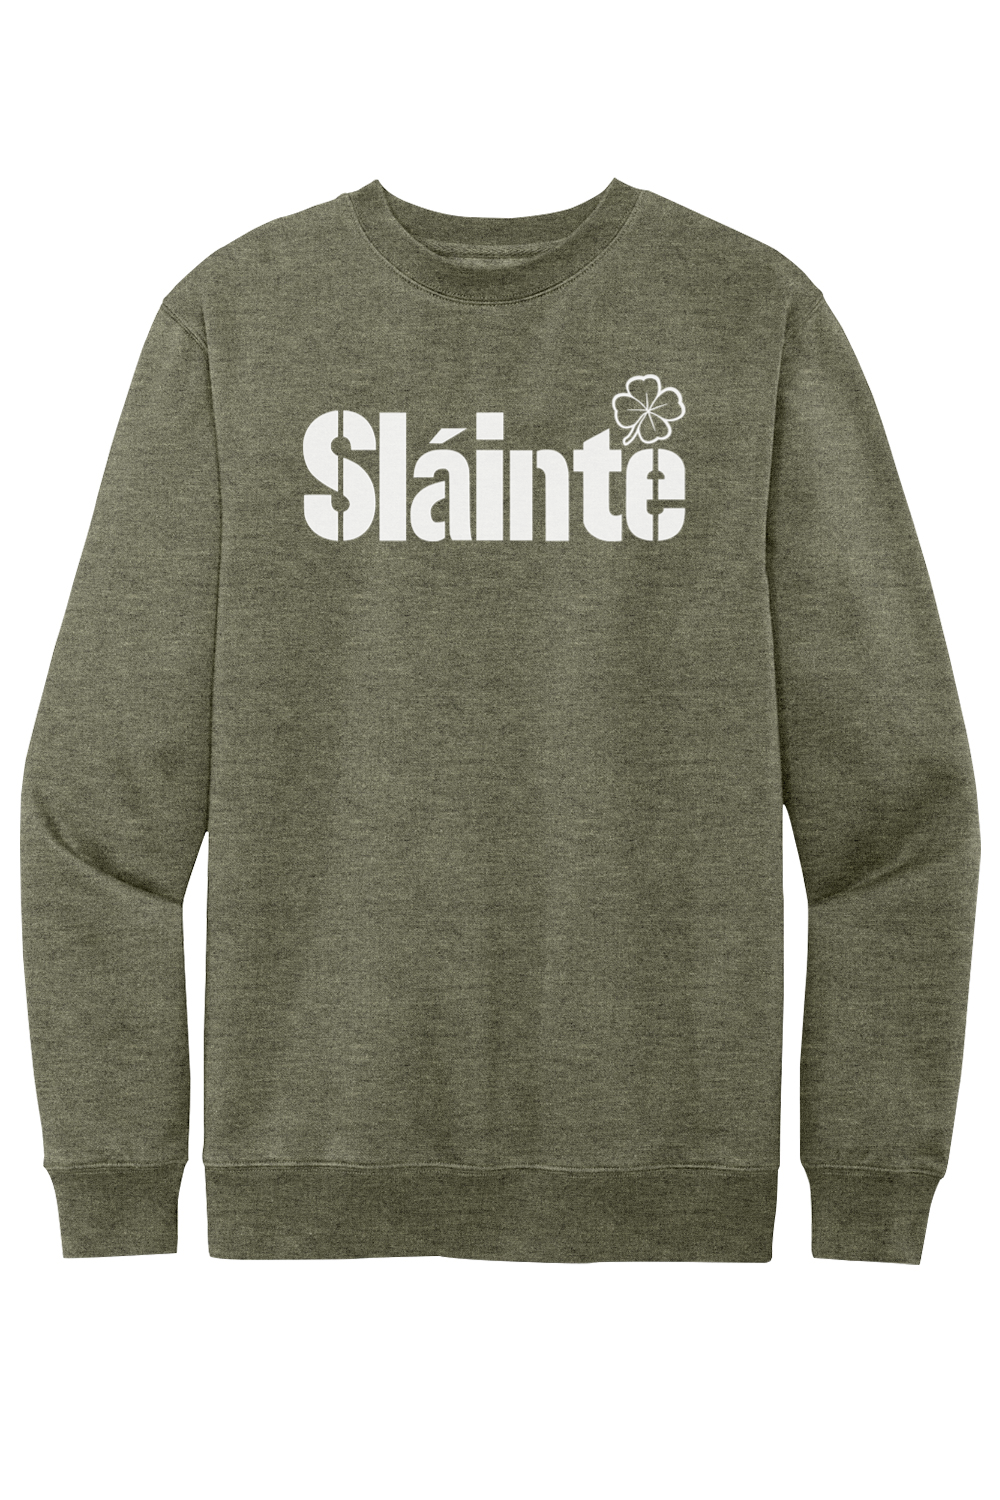 Slainte - Steel City - Fleece Crewneck Sweatshirt - Yinzylvania